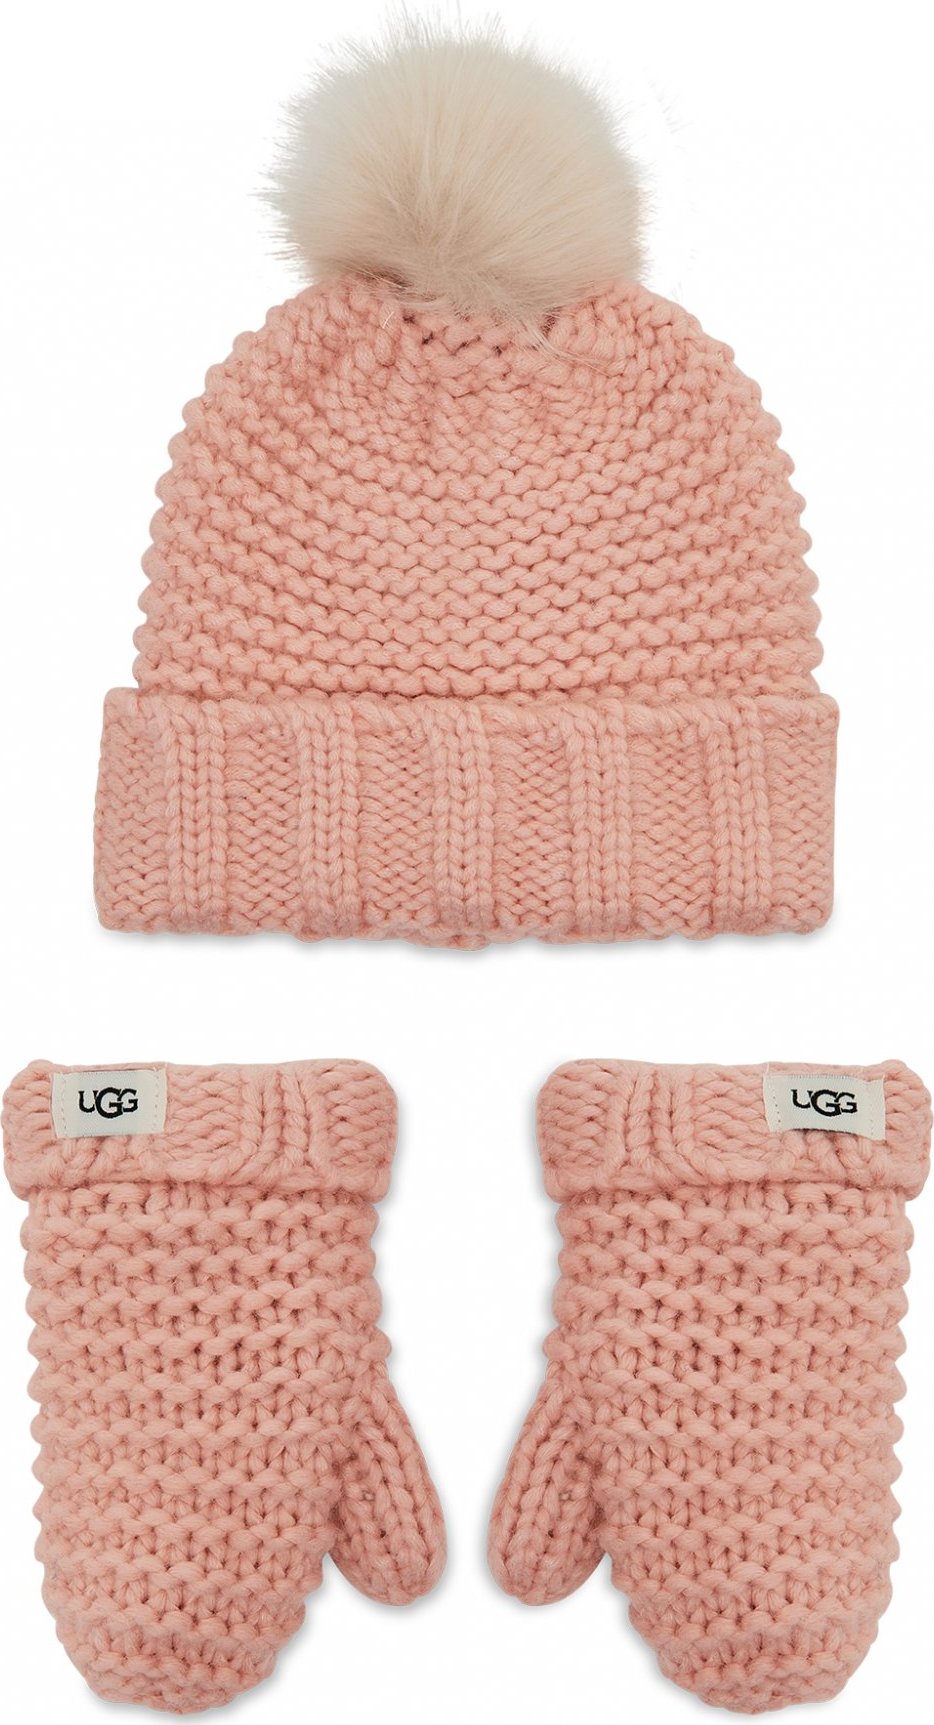 Ugg K Infant Knit Set 20124